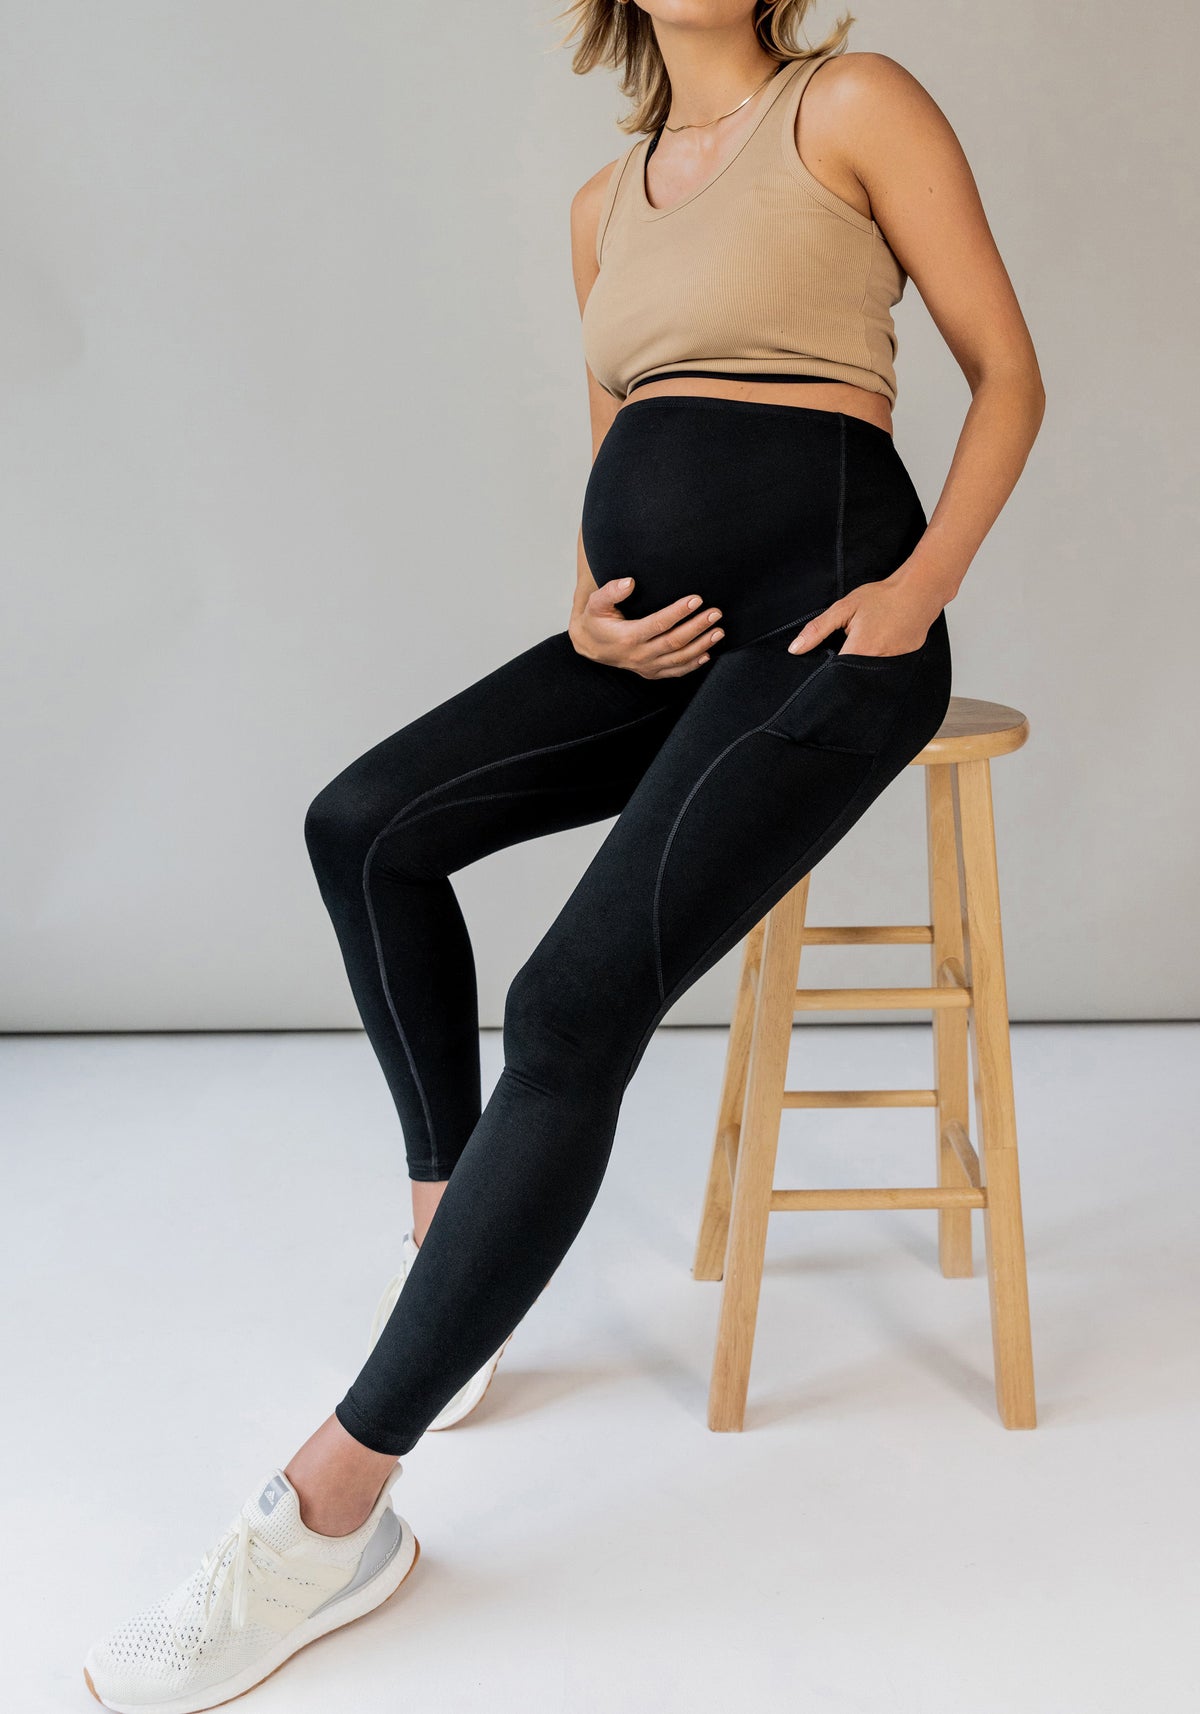 JOYSPELS Maternity Leggings Over … curated on LTK